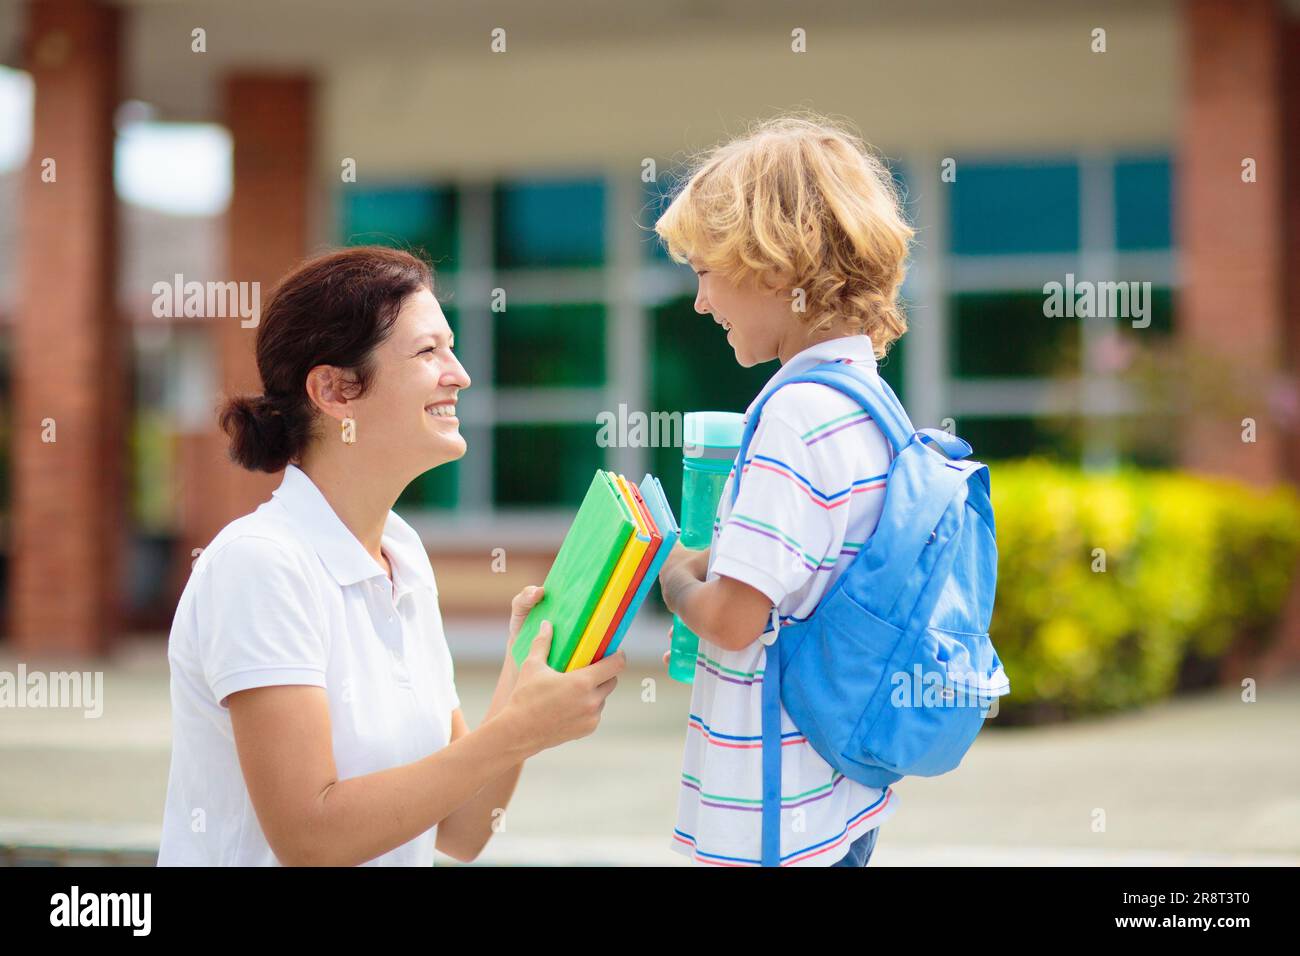 Mère amenant l'enfant à l'école. Les parents viennent chercher un petit garçon après le cours. Jeune maman qui prend un enfant après des leçons de maternelle ou d'école maternelle. Banque D'Images